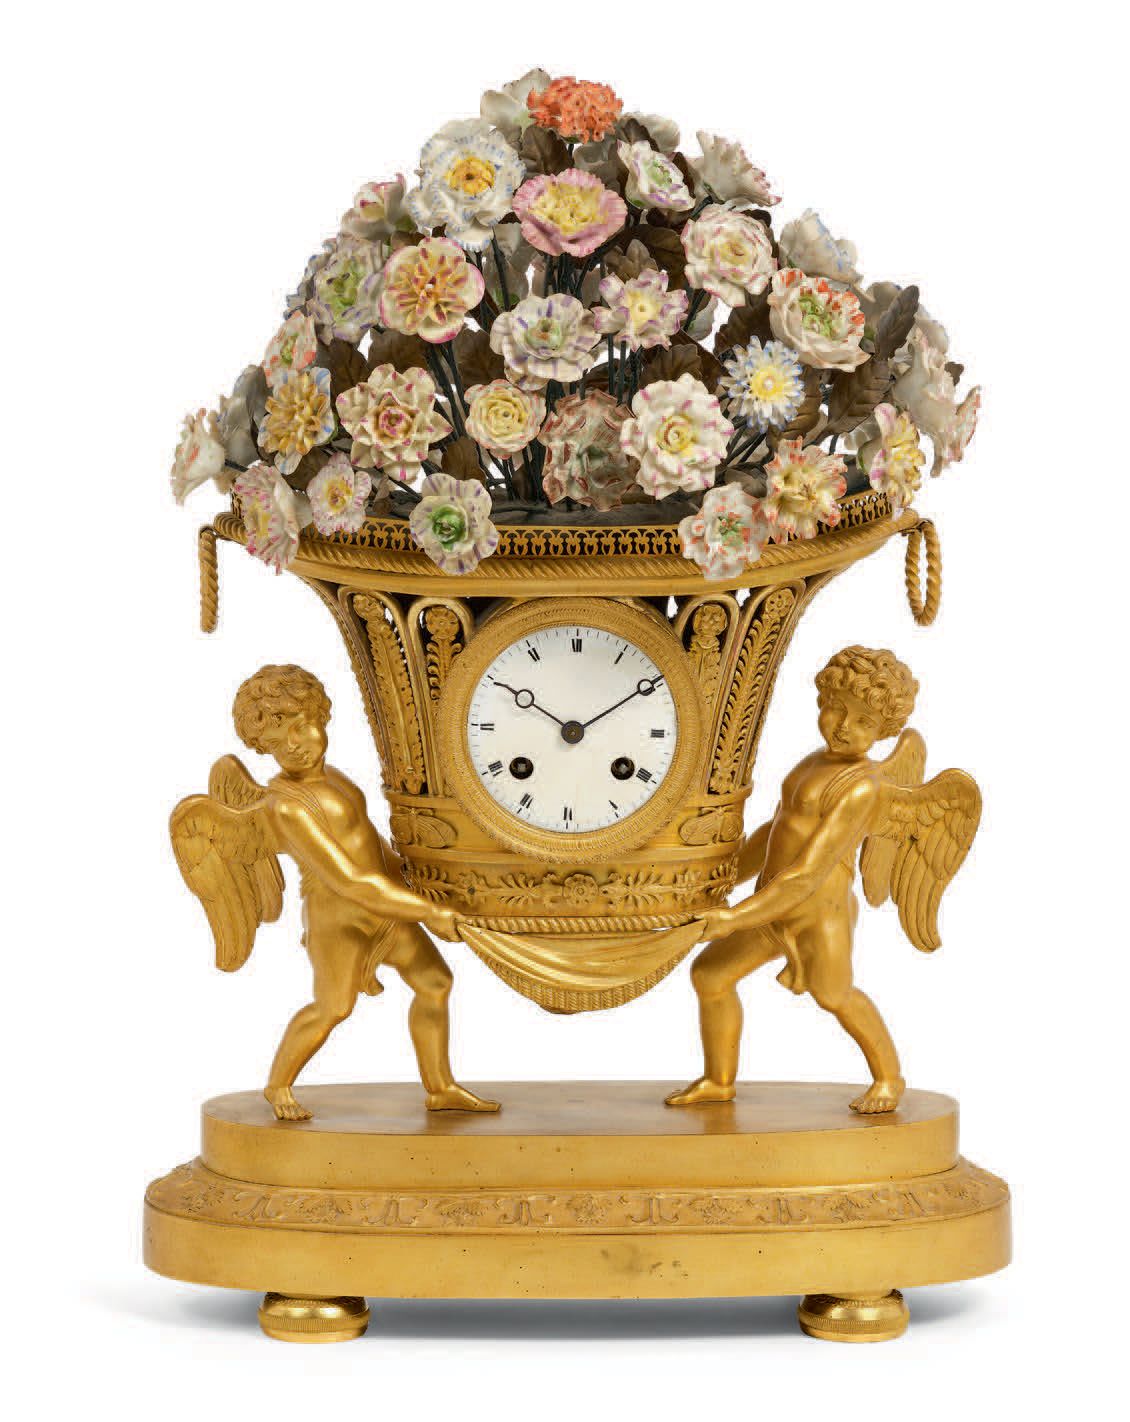 TRAVAIL FRANÇAIS - Début XIXe siècle 被称为 "Jardinière "的时钟。 
鎏金铜和瓷器。下部表现了两个小天使支撑着&hellip;